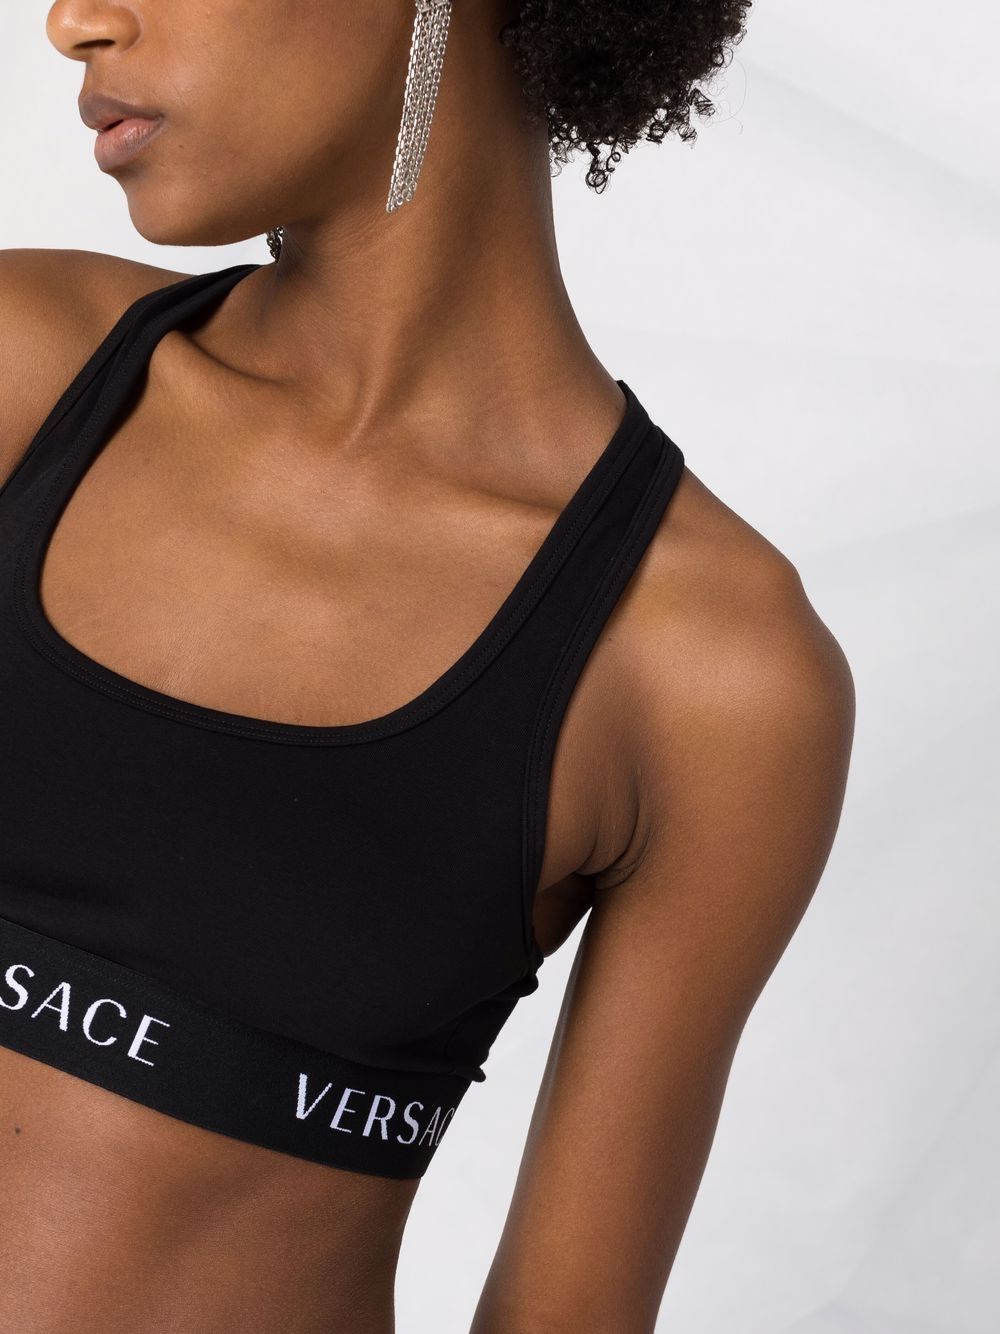 фото Versace спортивный бюстгальтер с логотипом